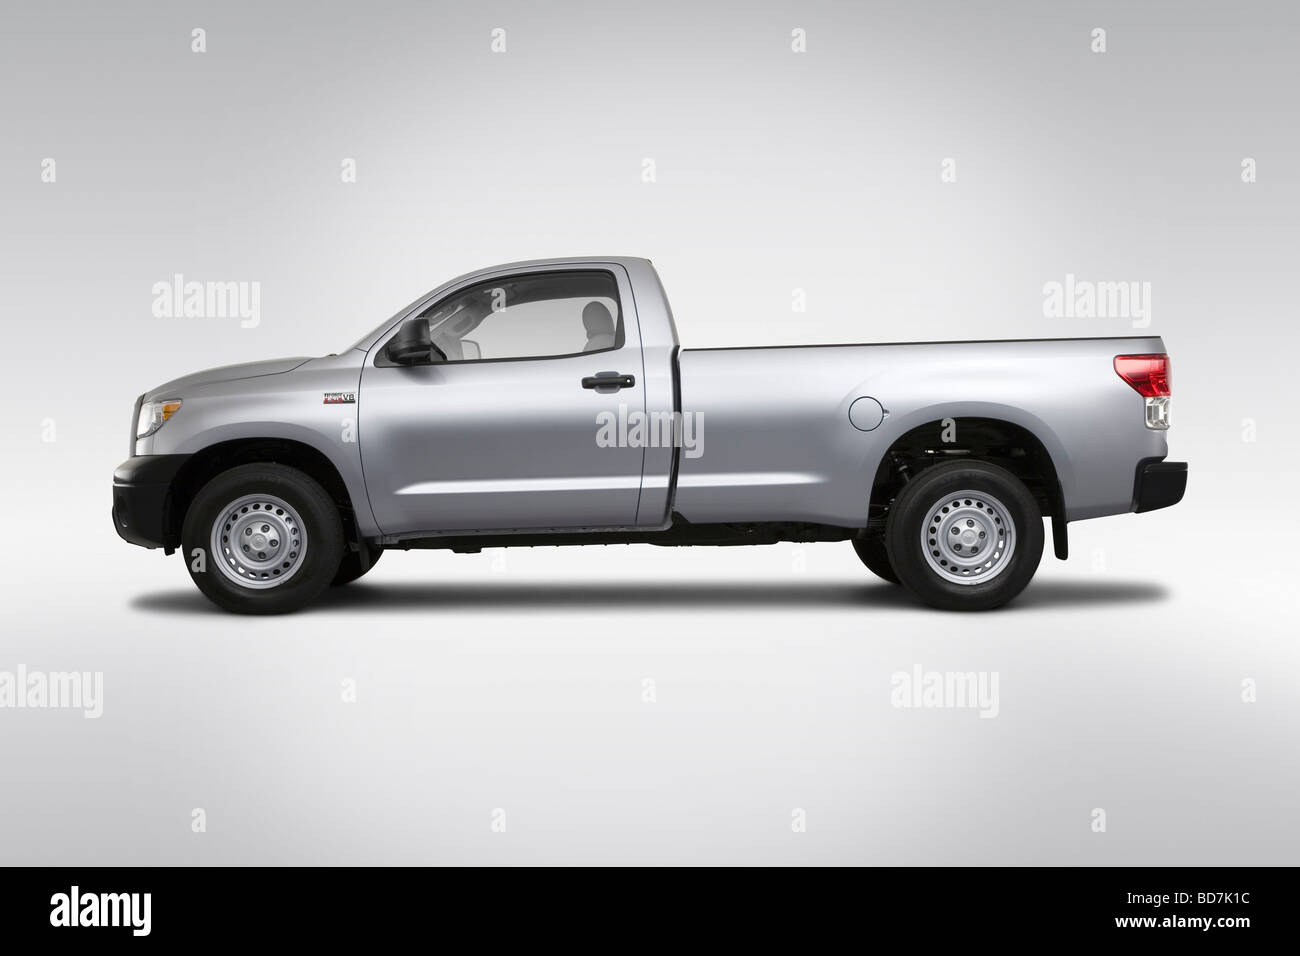 2010 Toyota Tundra dans l'argent - Pilotes Portrait Banque D'Images